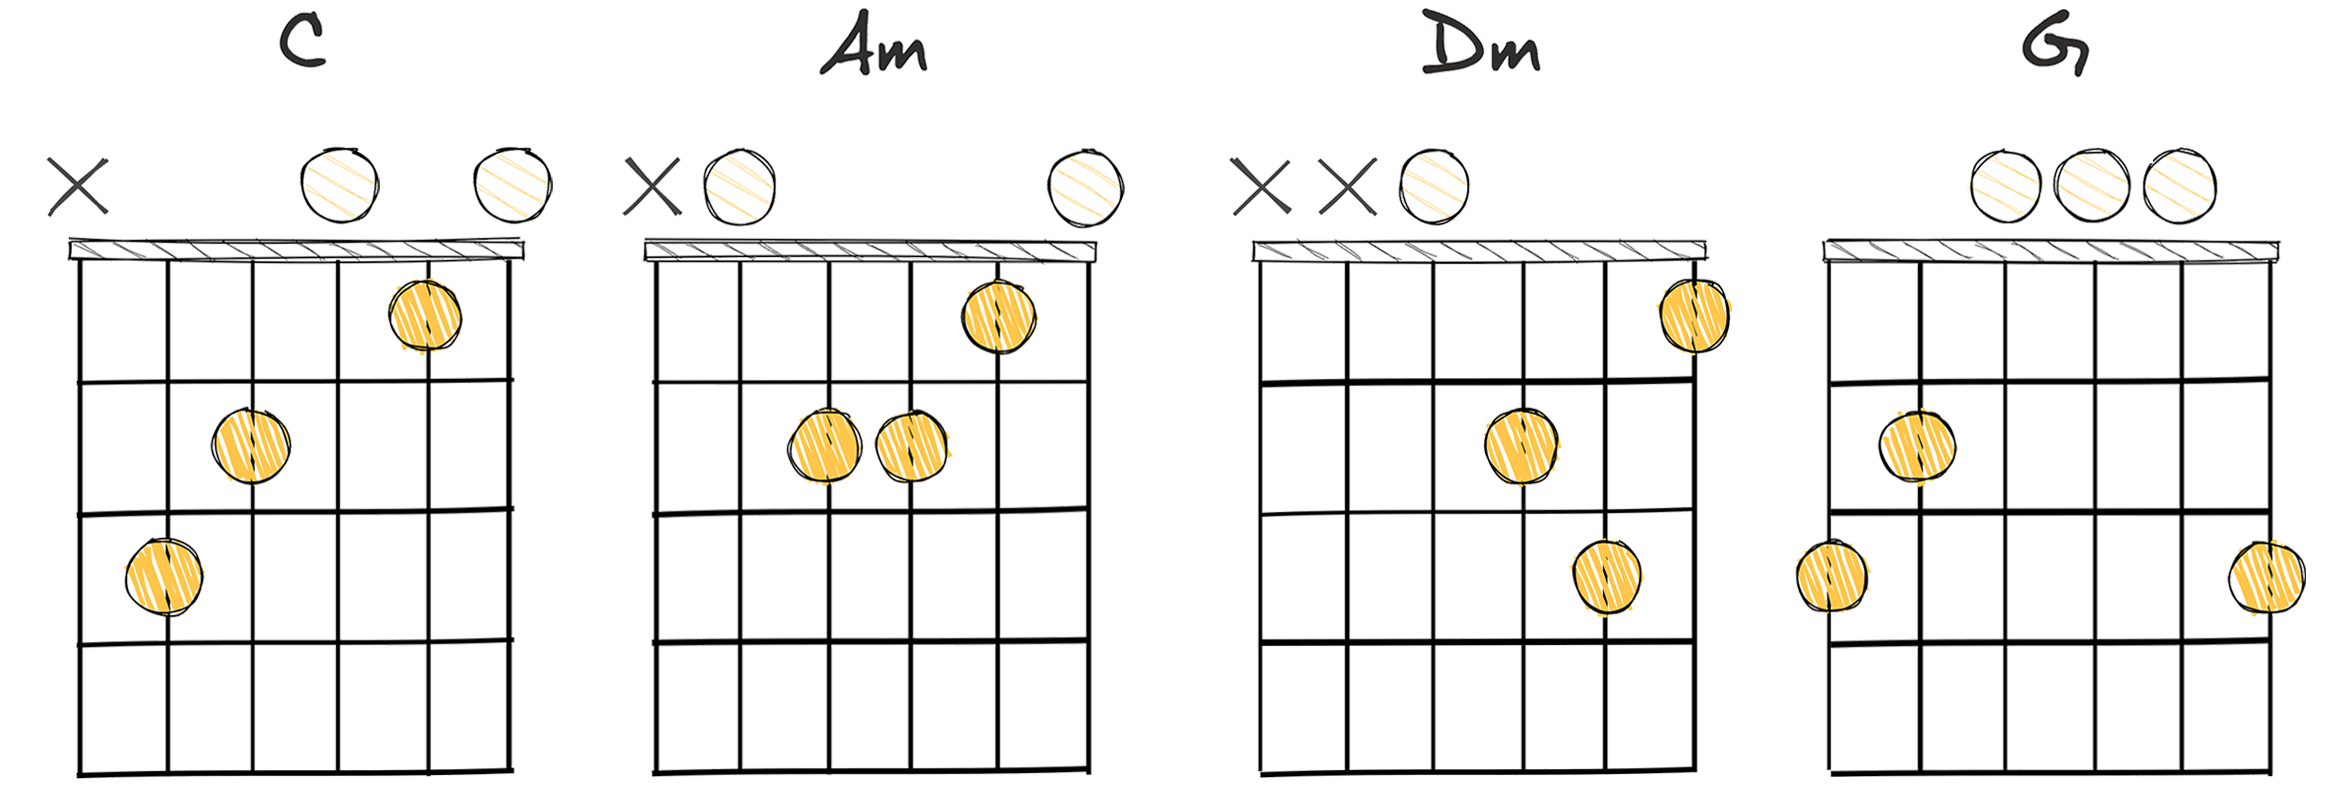 I-vi-ii-V (1-6-2-5) chords diagram